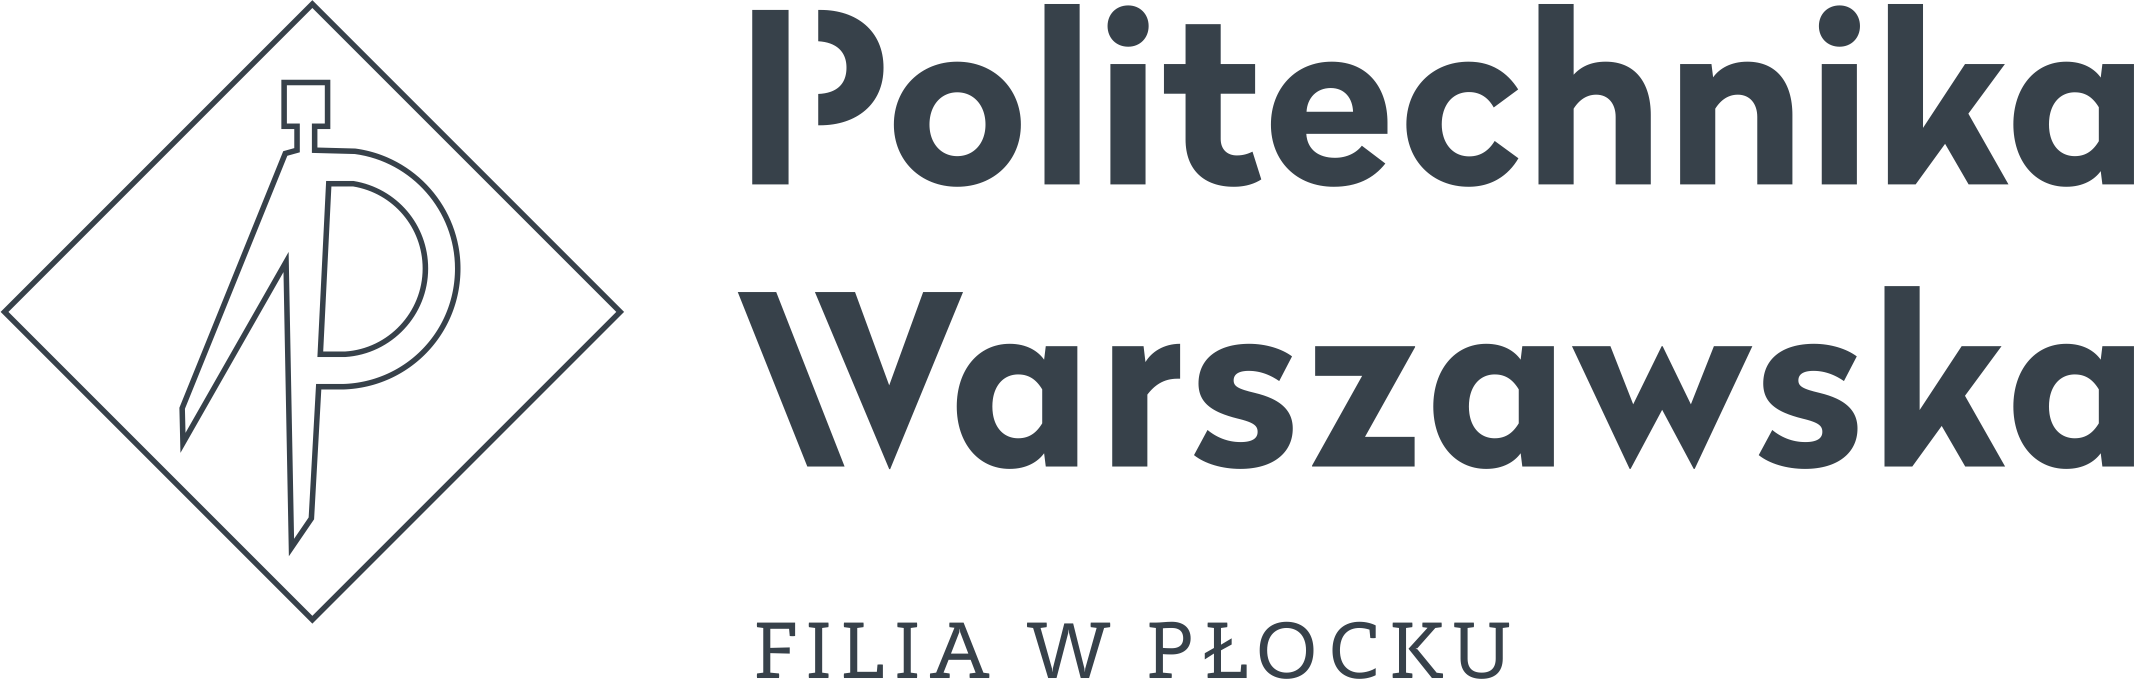 Logo PW Filia w Płocku 3